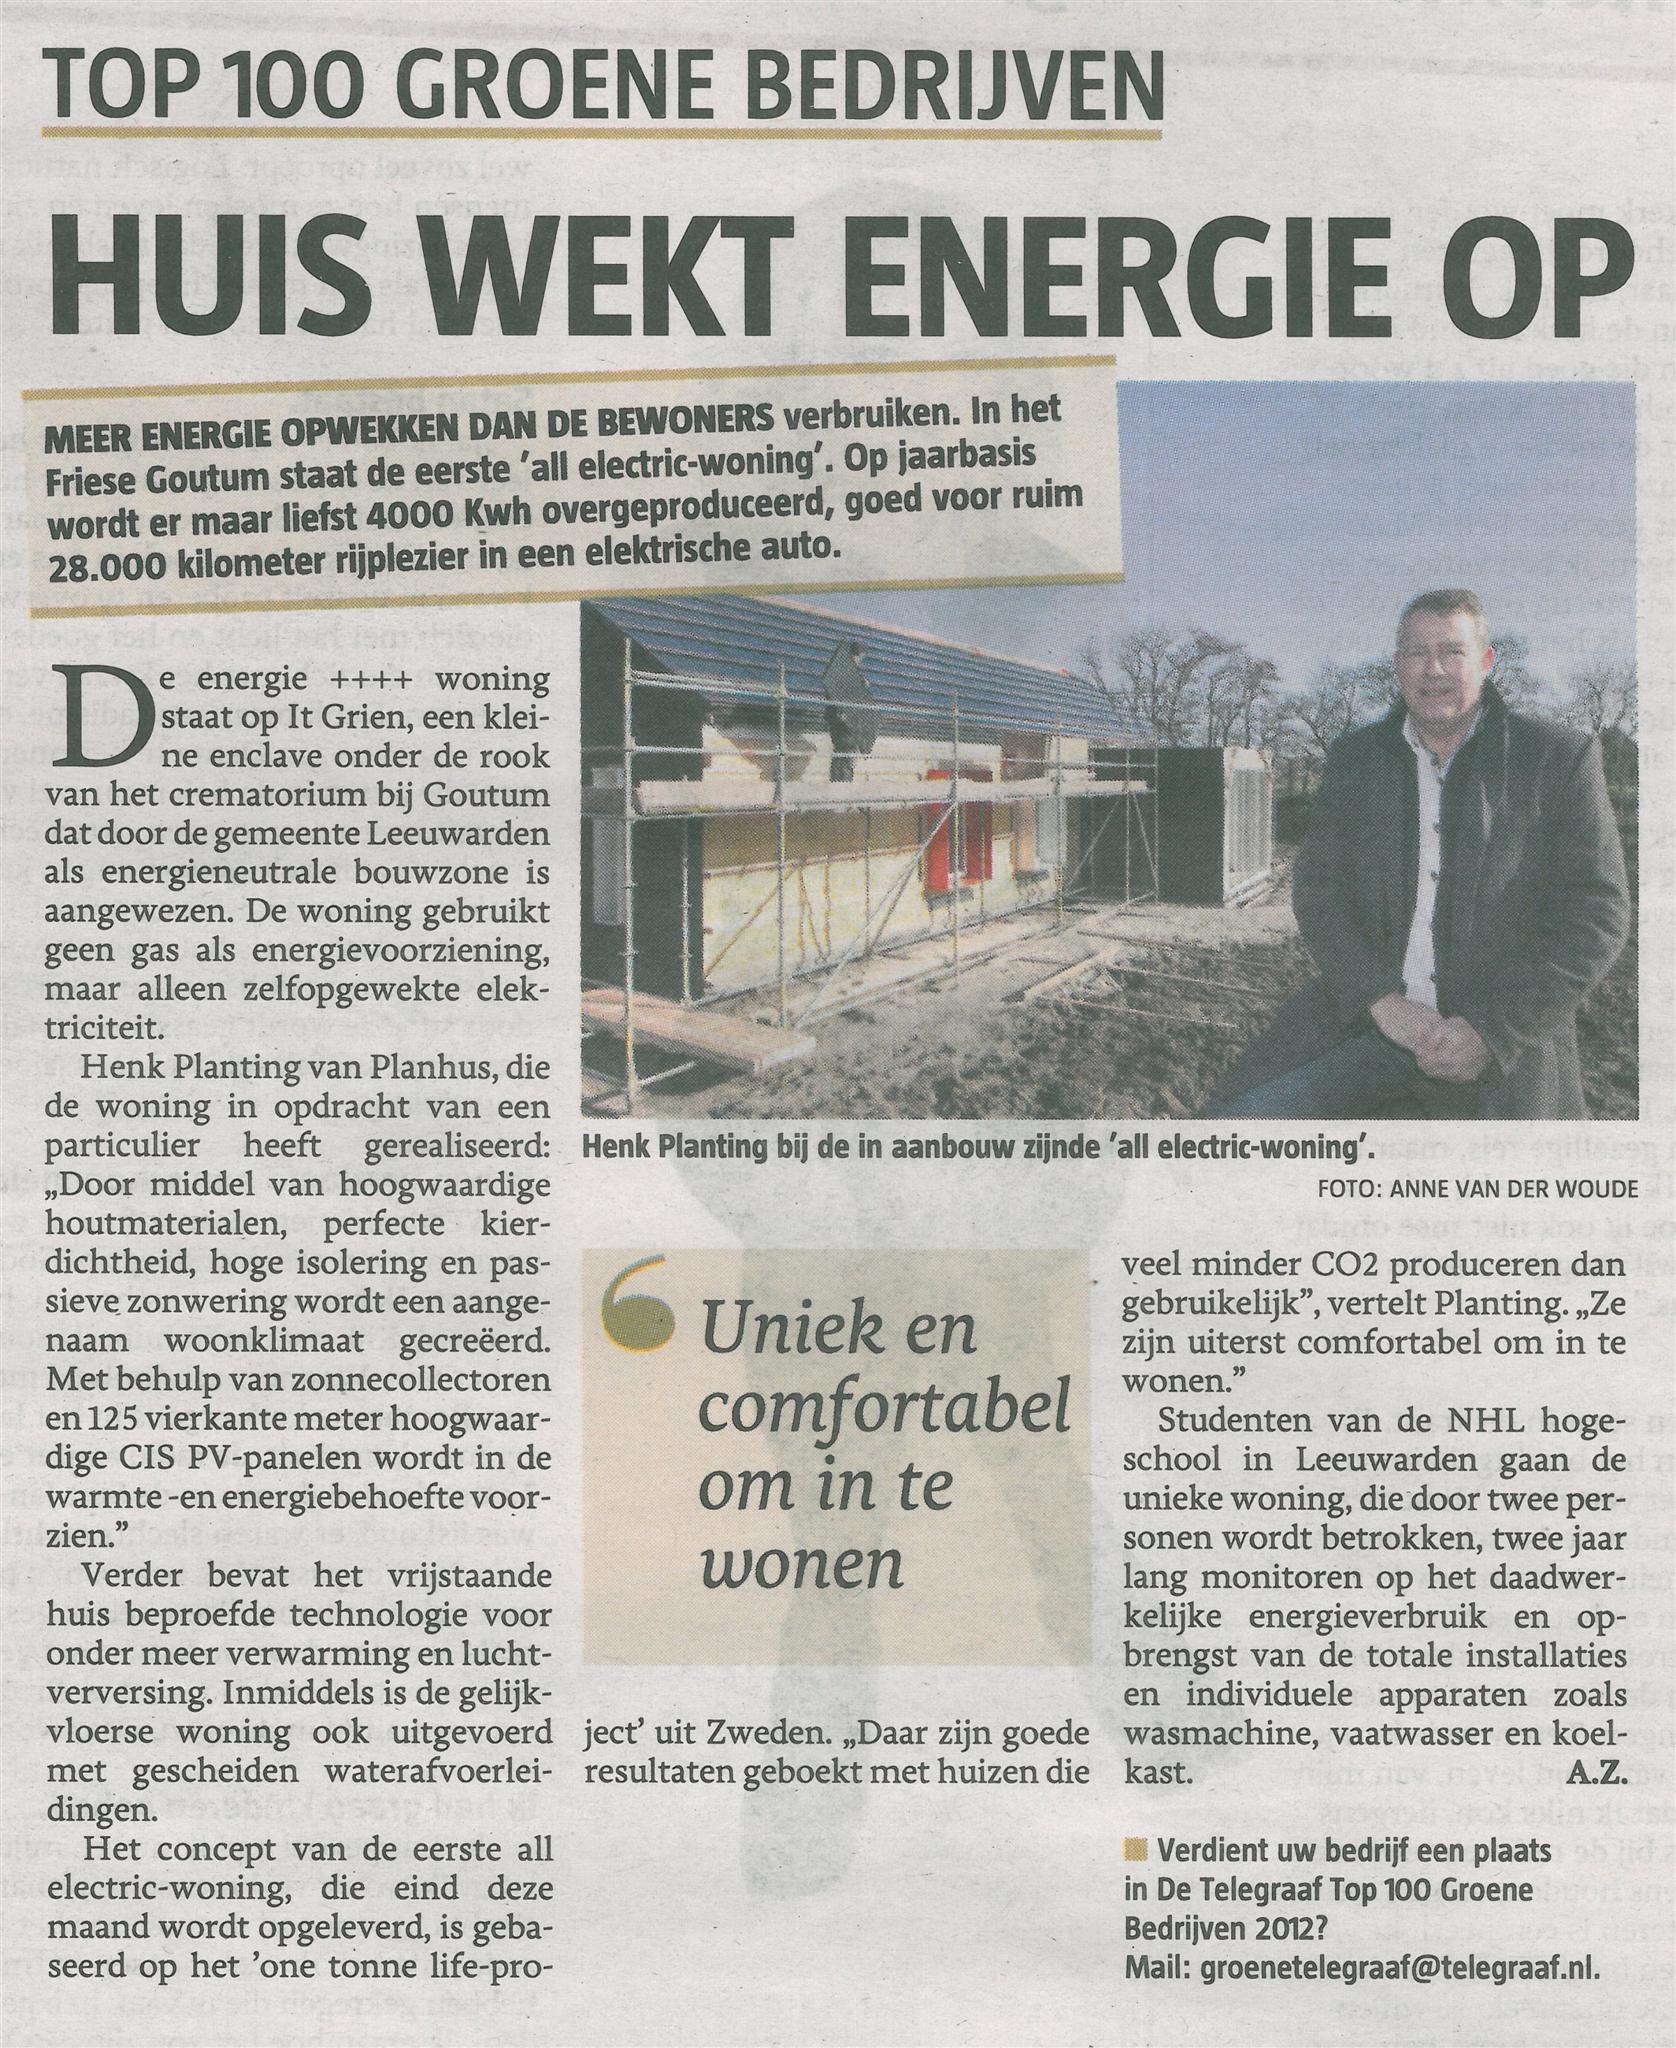 Huis wekt energie op, de Telegraaf (Top 100 Groene bedrijven)